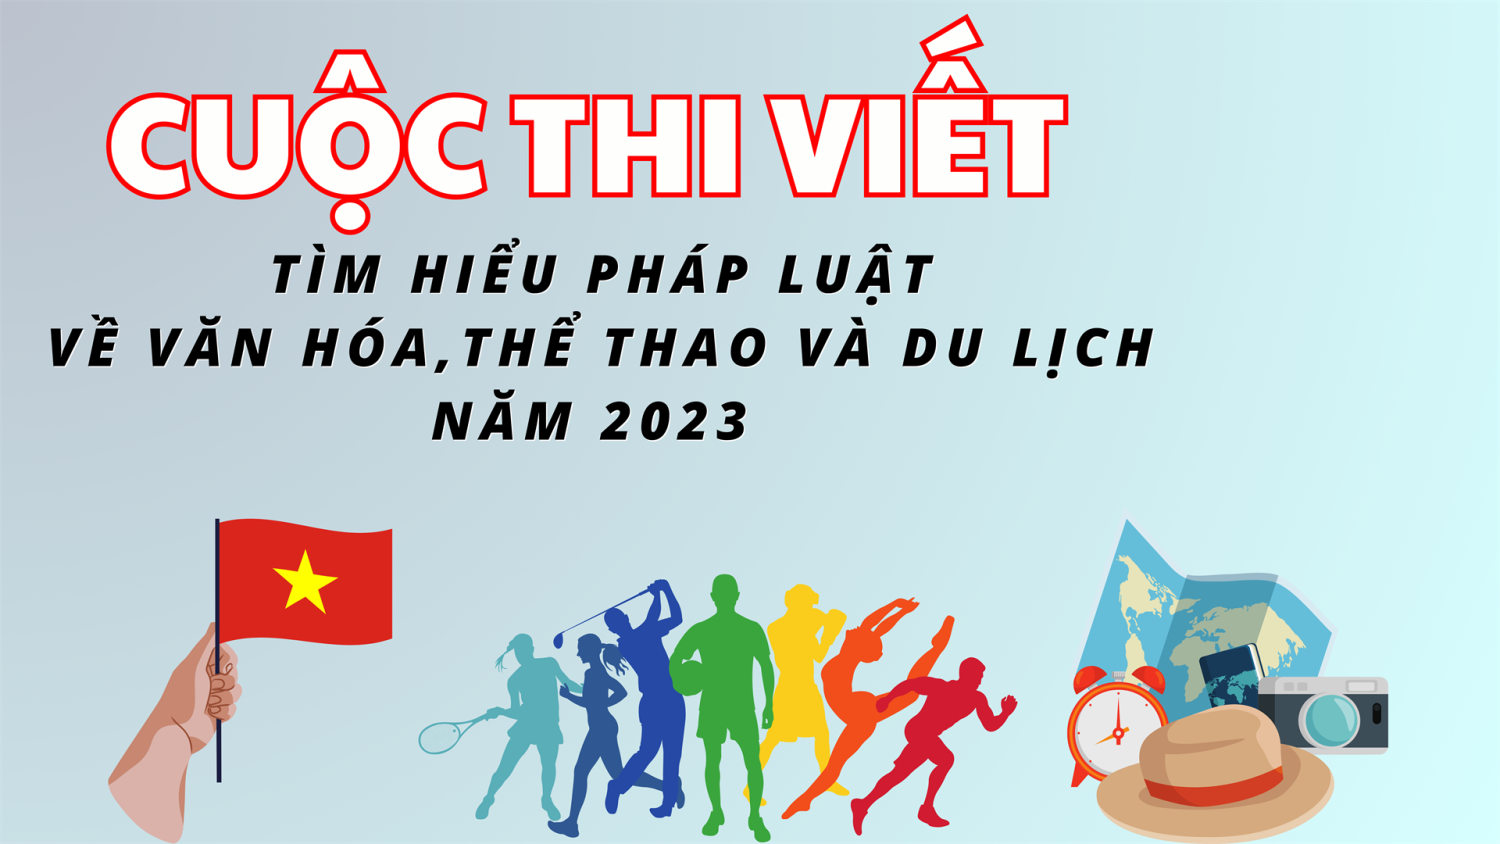 Tây Ninh: Phát động cuộc thi viết “Tìm hiểu pháp luật về Văn hóa, Thể thao và Du lịch” năm 2023